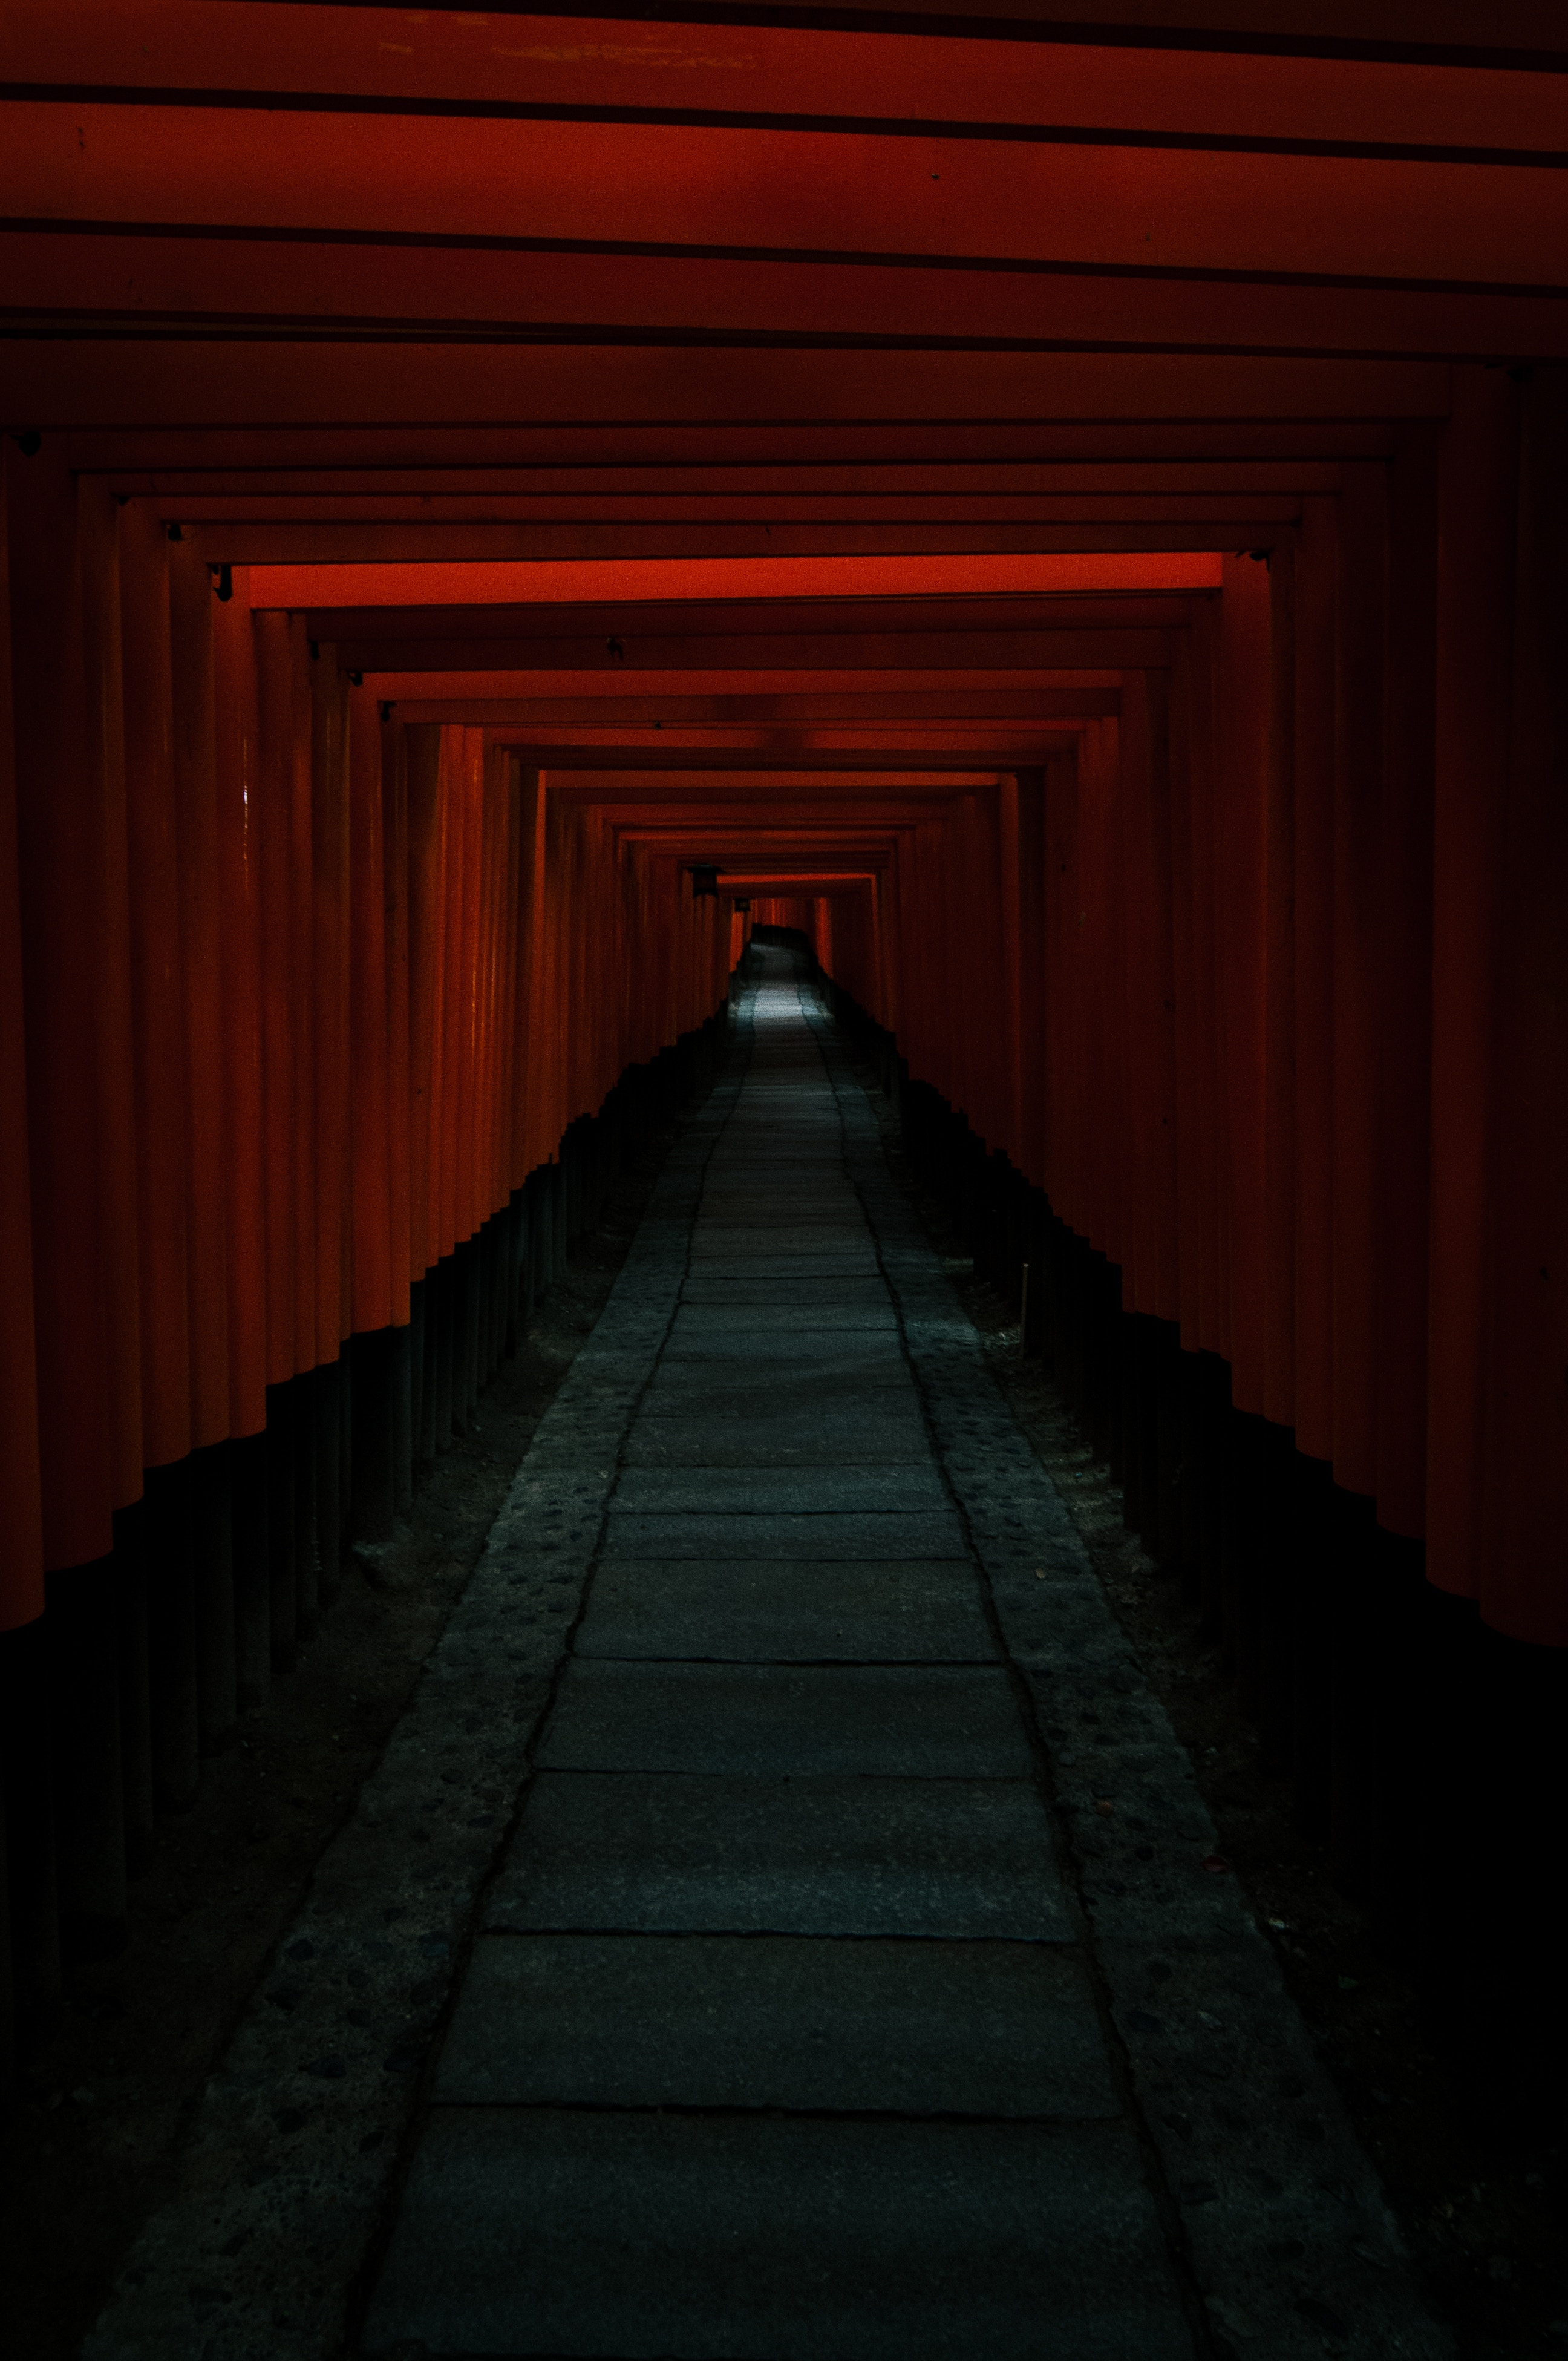 tunnel, dark, red, passage cellphone